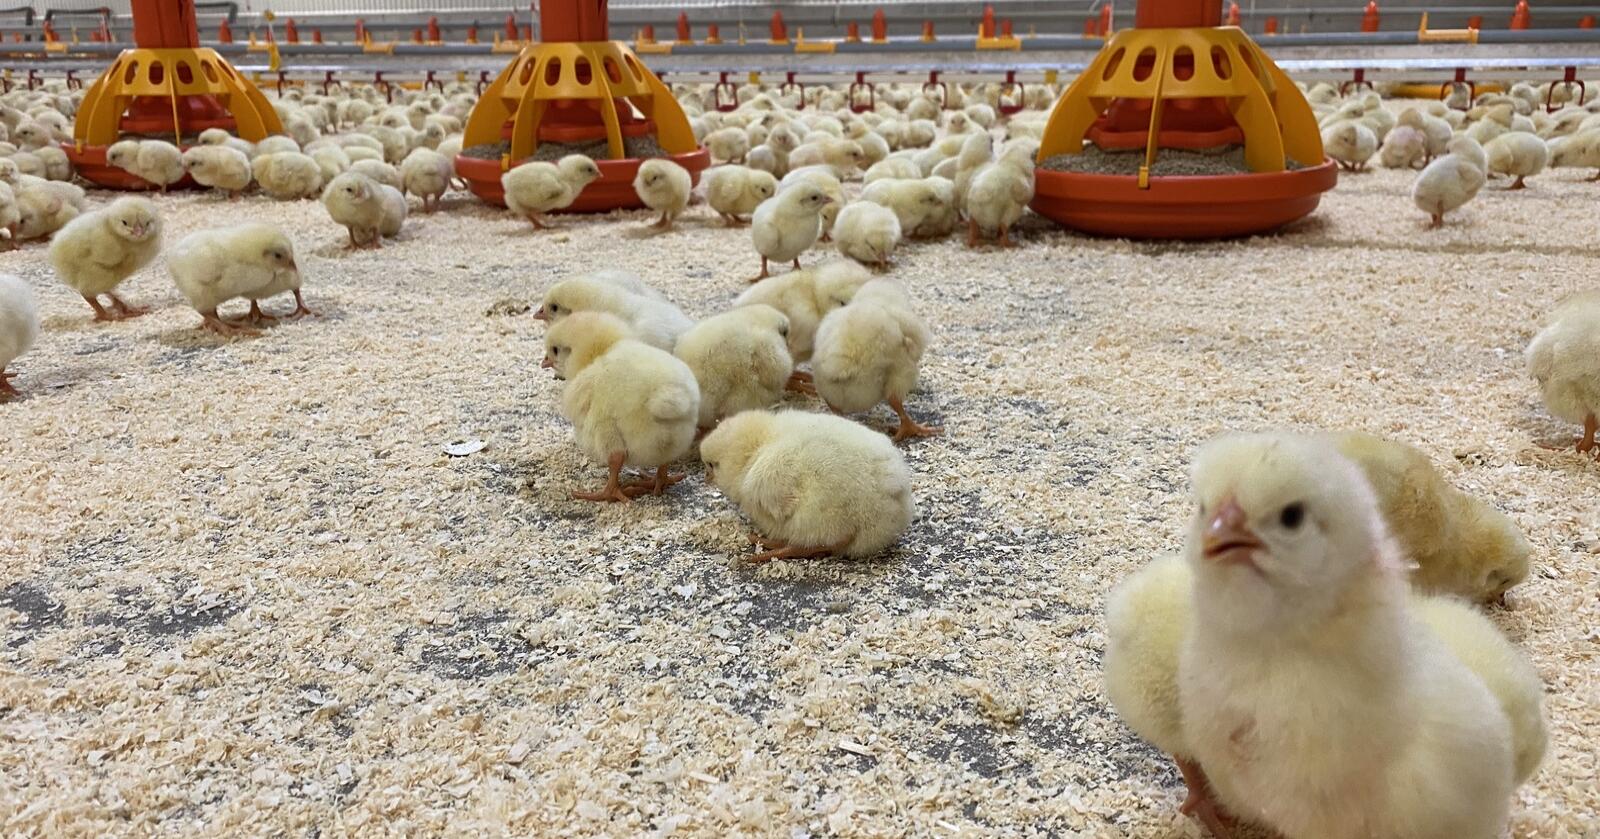 Norturas industrikunder må belage seg på vesentlig mindre leveranser av norsk kylling de kommende ukene. Illustrasjonsfoto: Camilla Mellemstrand